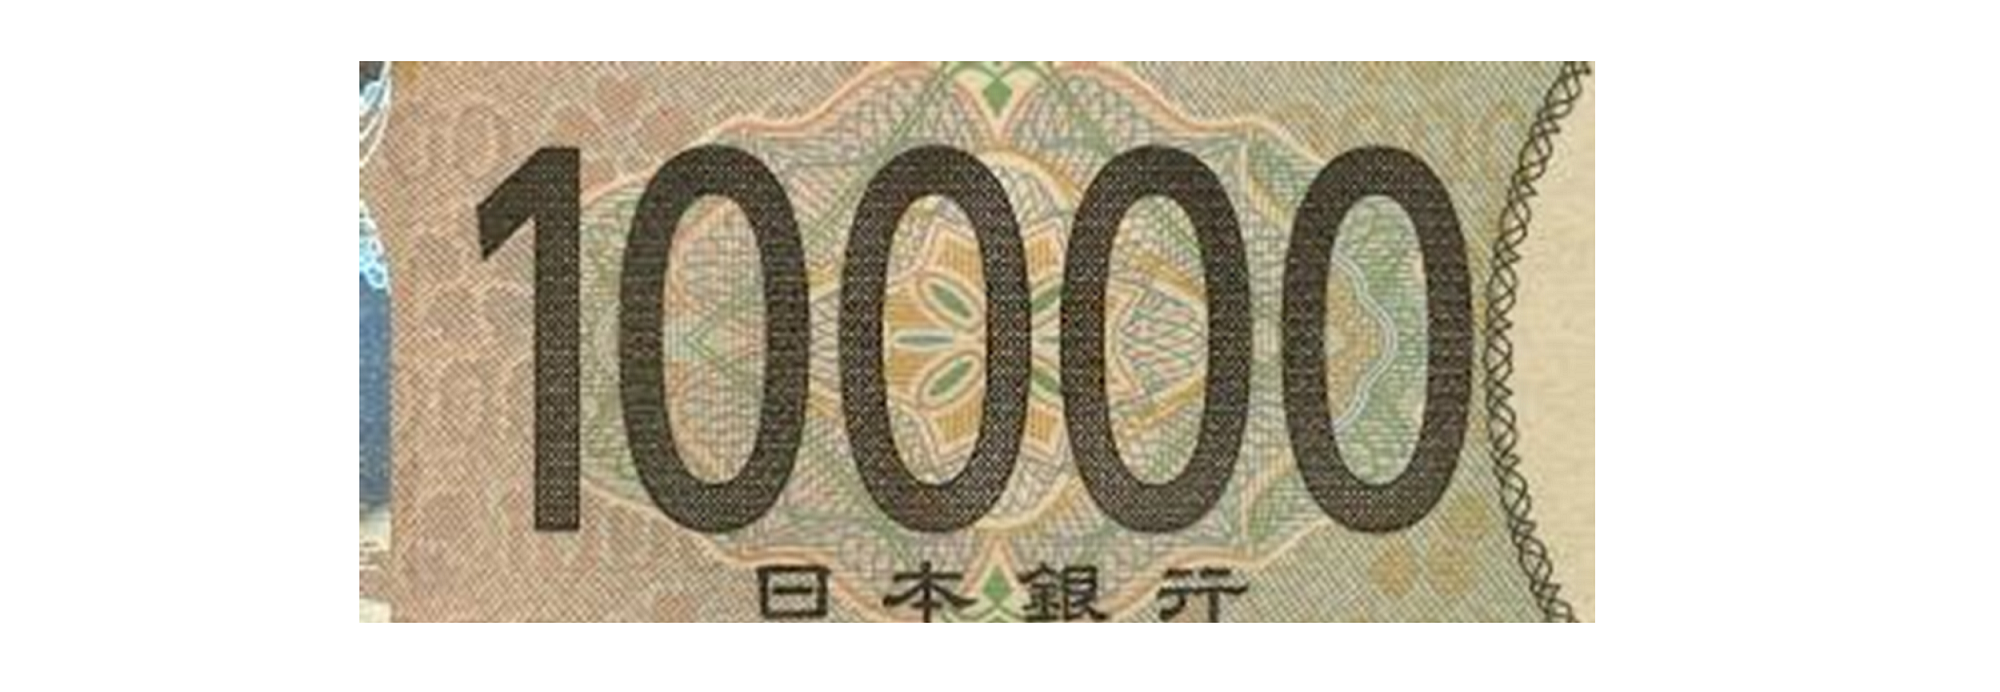 一万円券表面の左側中央にある額面数字の画像。